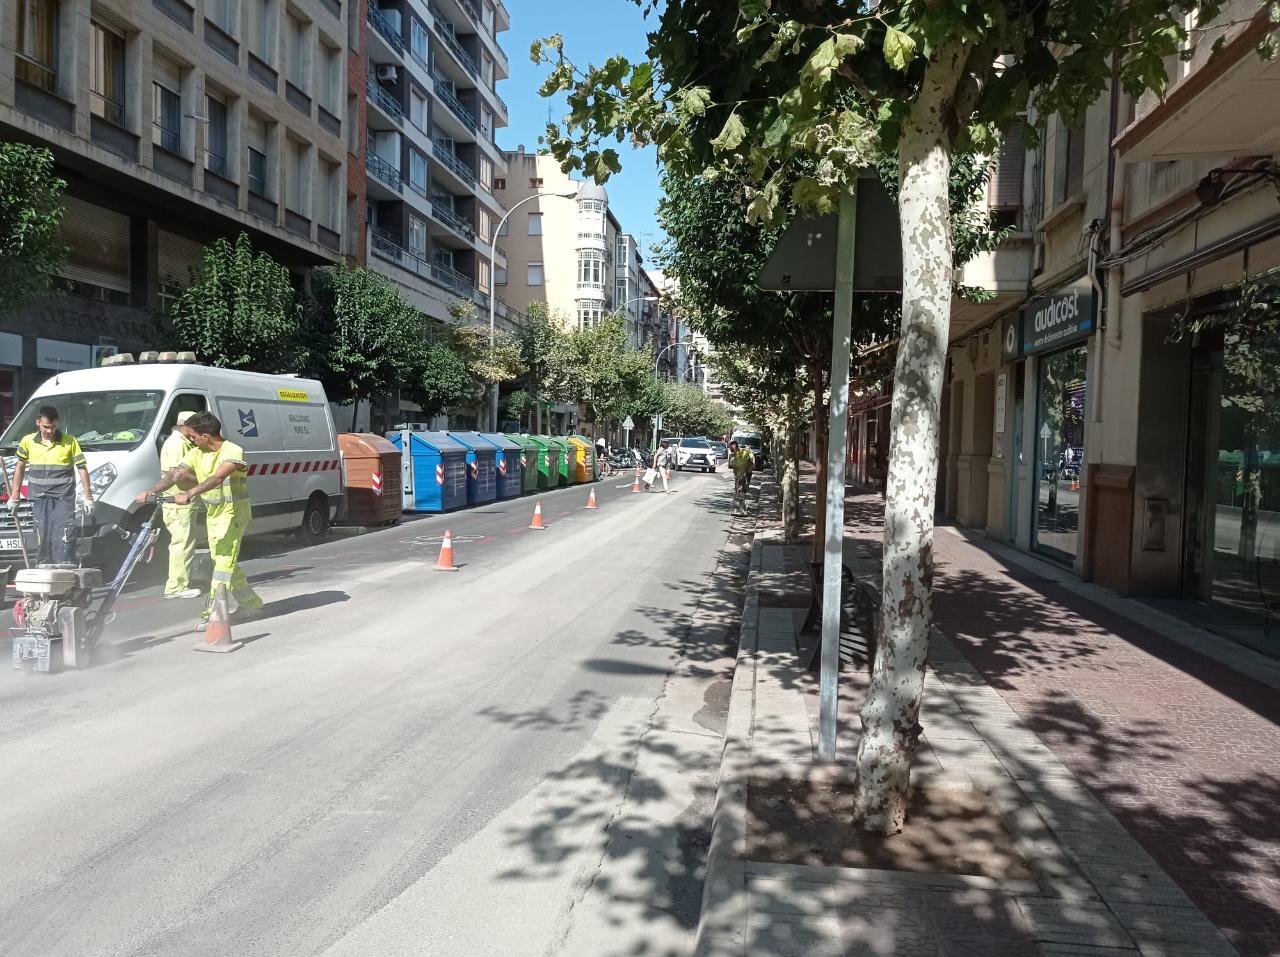 Eliminada a polémica ciclovia da Avenida Portugal em Logroño – Logroño